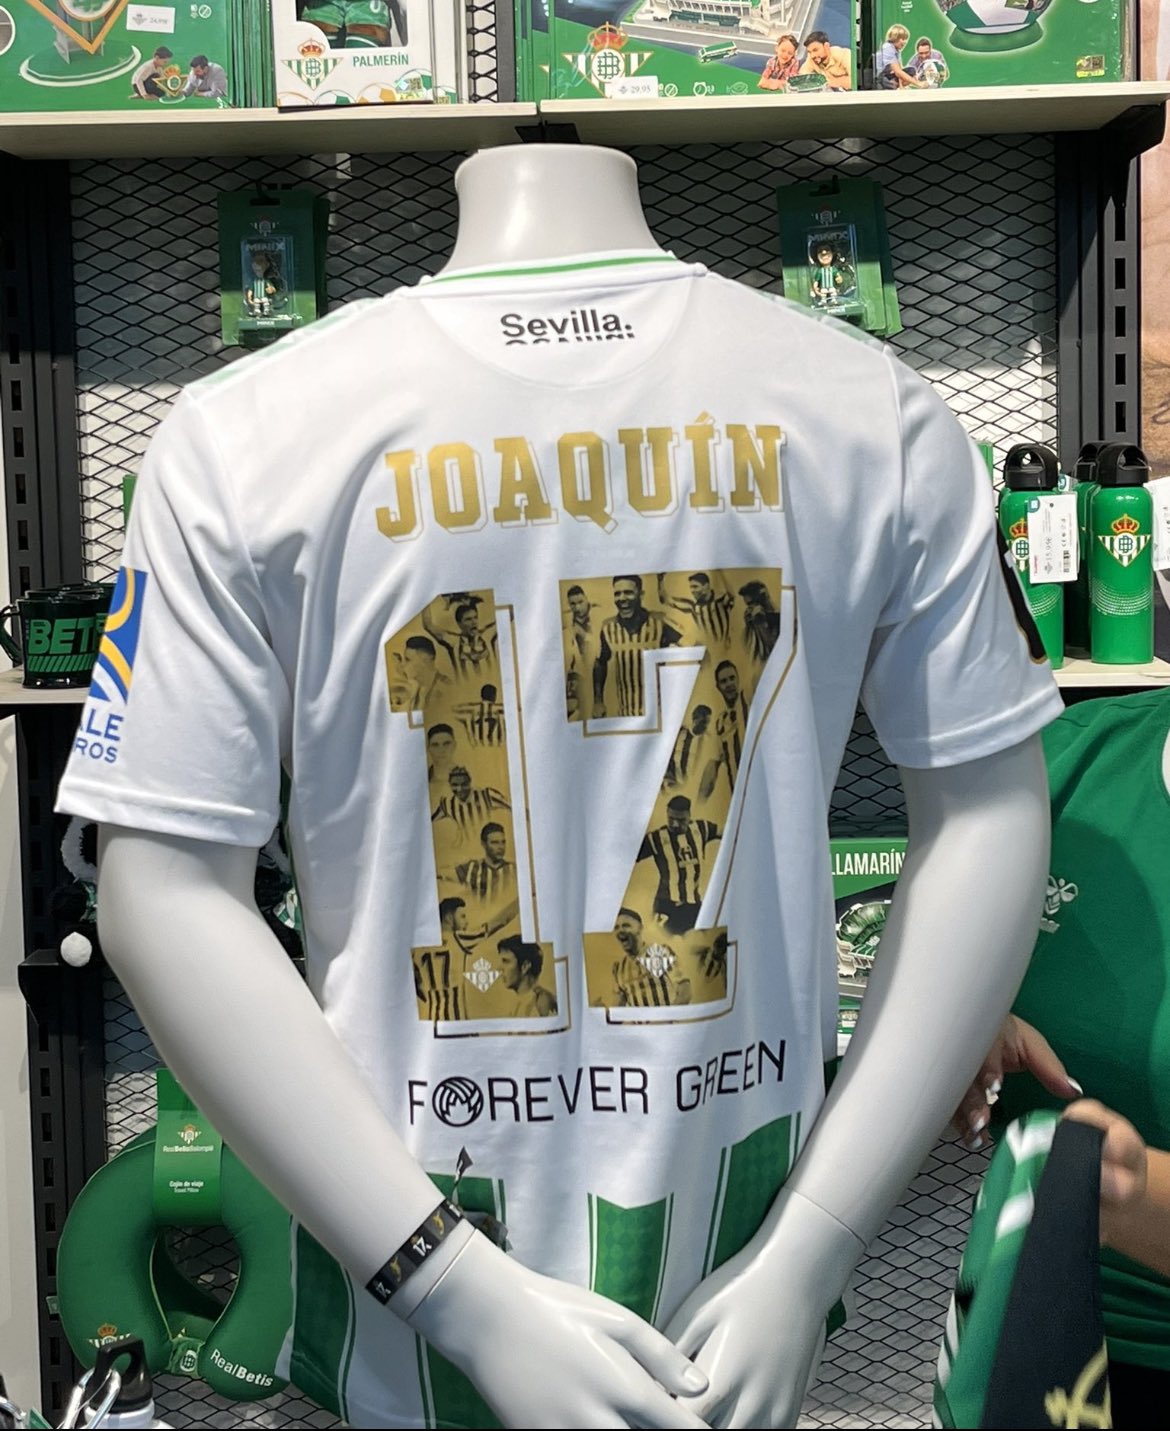 𝙎𝙞𝙚𝙢𝙥𝙧𝙚 𝙁𝙪𝙚𝙧𝙩𝙚 on Twitter: "ÚLTIMA HORA | 🟢 Así será la camiseta que lleven jugadores, en el partido de homenaje de nuestro Joaquín Sánchez el 6 Junio. 𝐓𝐇𝐄 𝐋𝐀𝐒𝐓